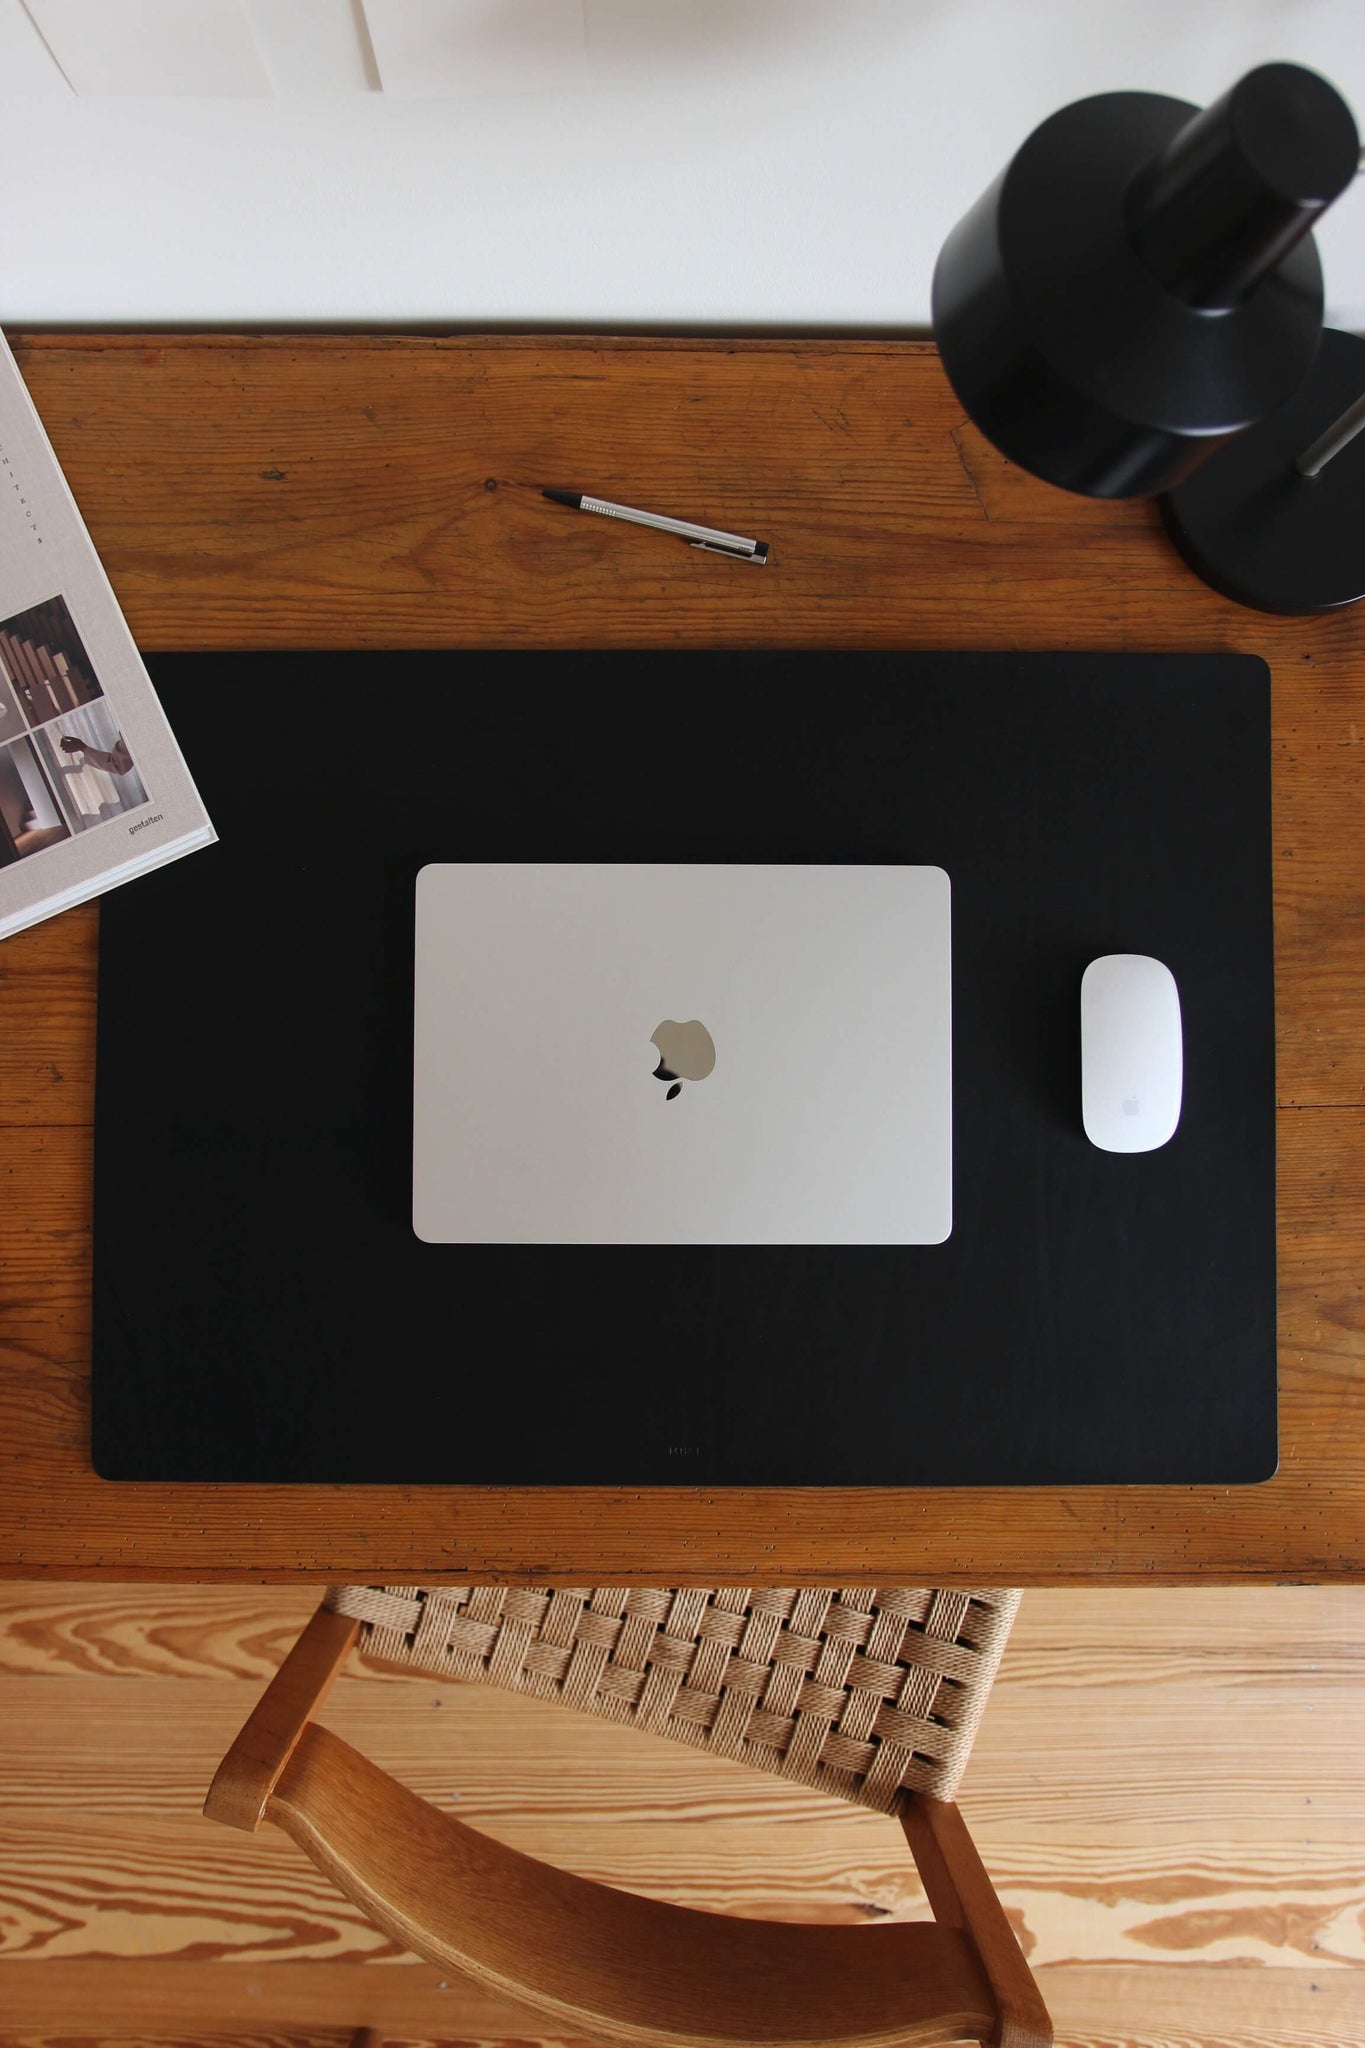 Leder Schreibtischunterlage in Schwarz auf einem Schreibtisch aus Holz und auf dieser befindet sich ein zugeklapptes MacBook und eine Maus.